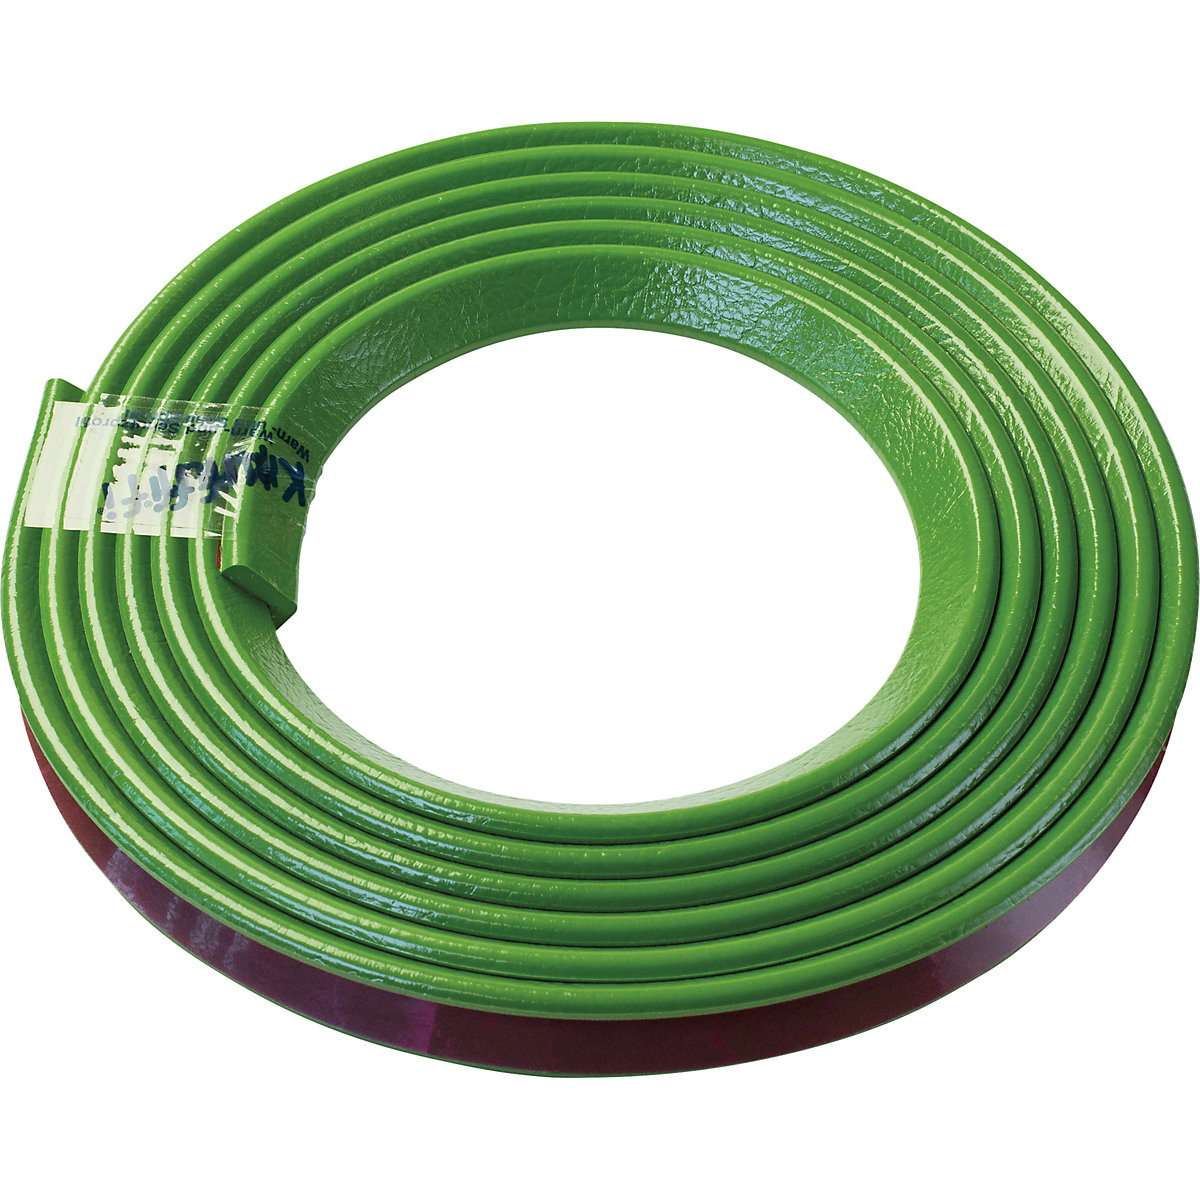 Zaščita vogalov Knuffi® – SHG, tip E, 1 rola po 5 m, zelene barve-19